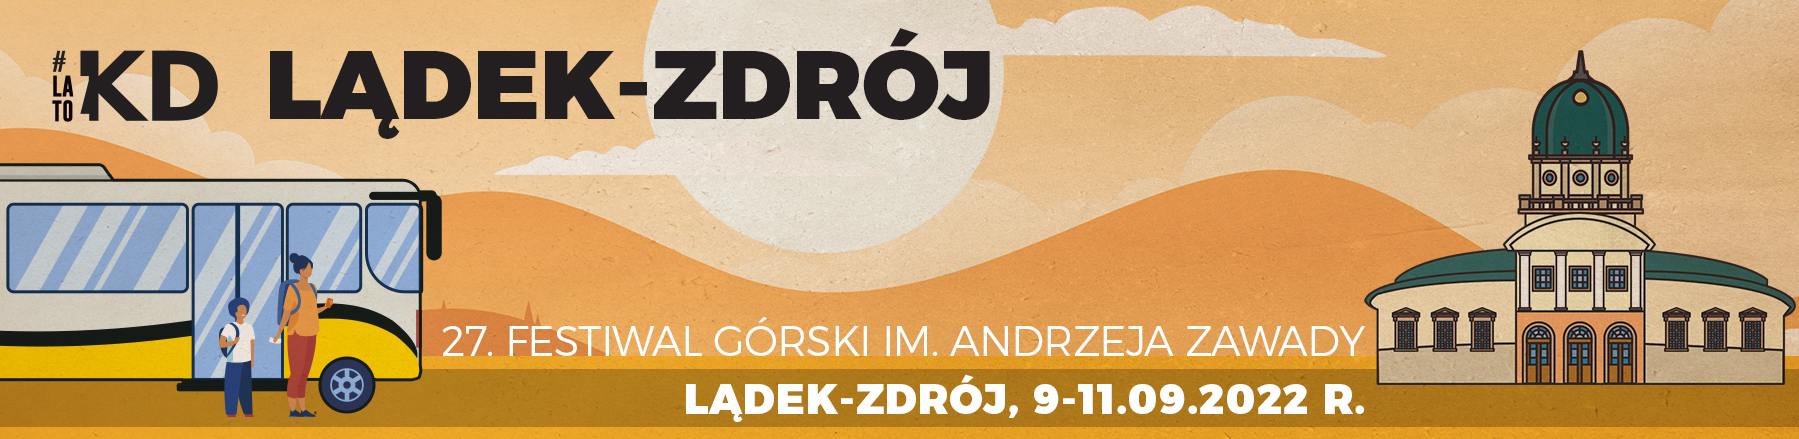 Banner 27 Festiwalu Górskiego im. A. Zawady w Lądku-Zdroju